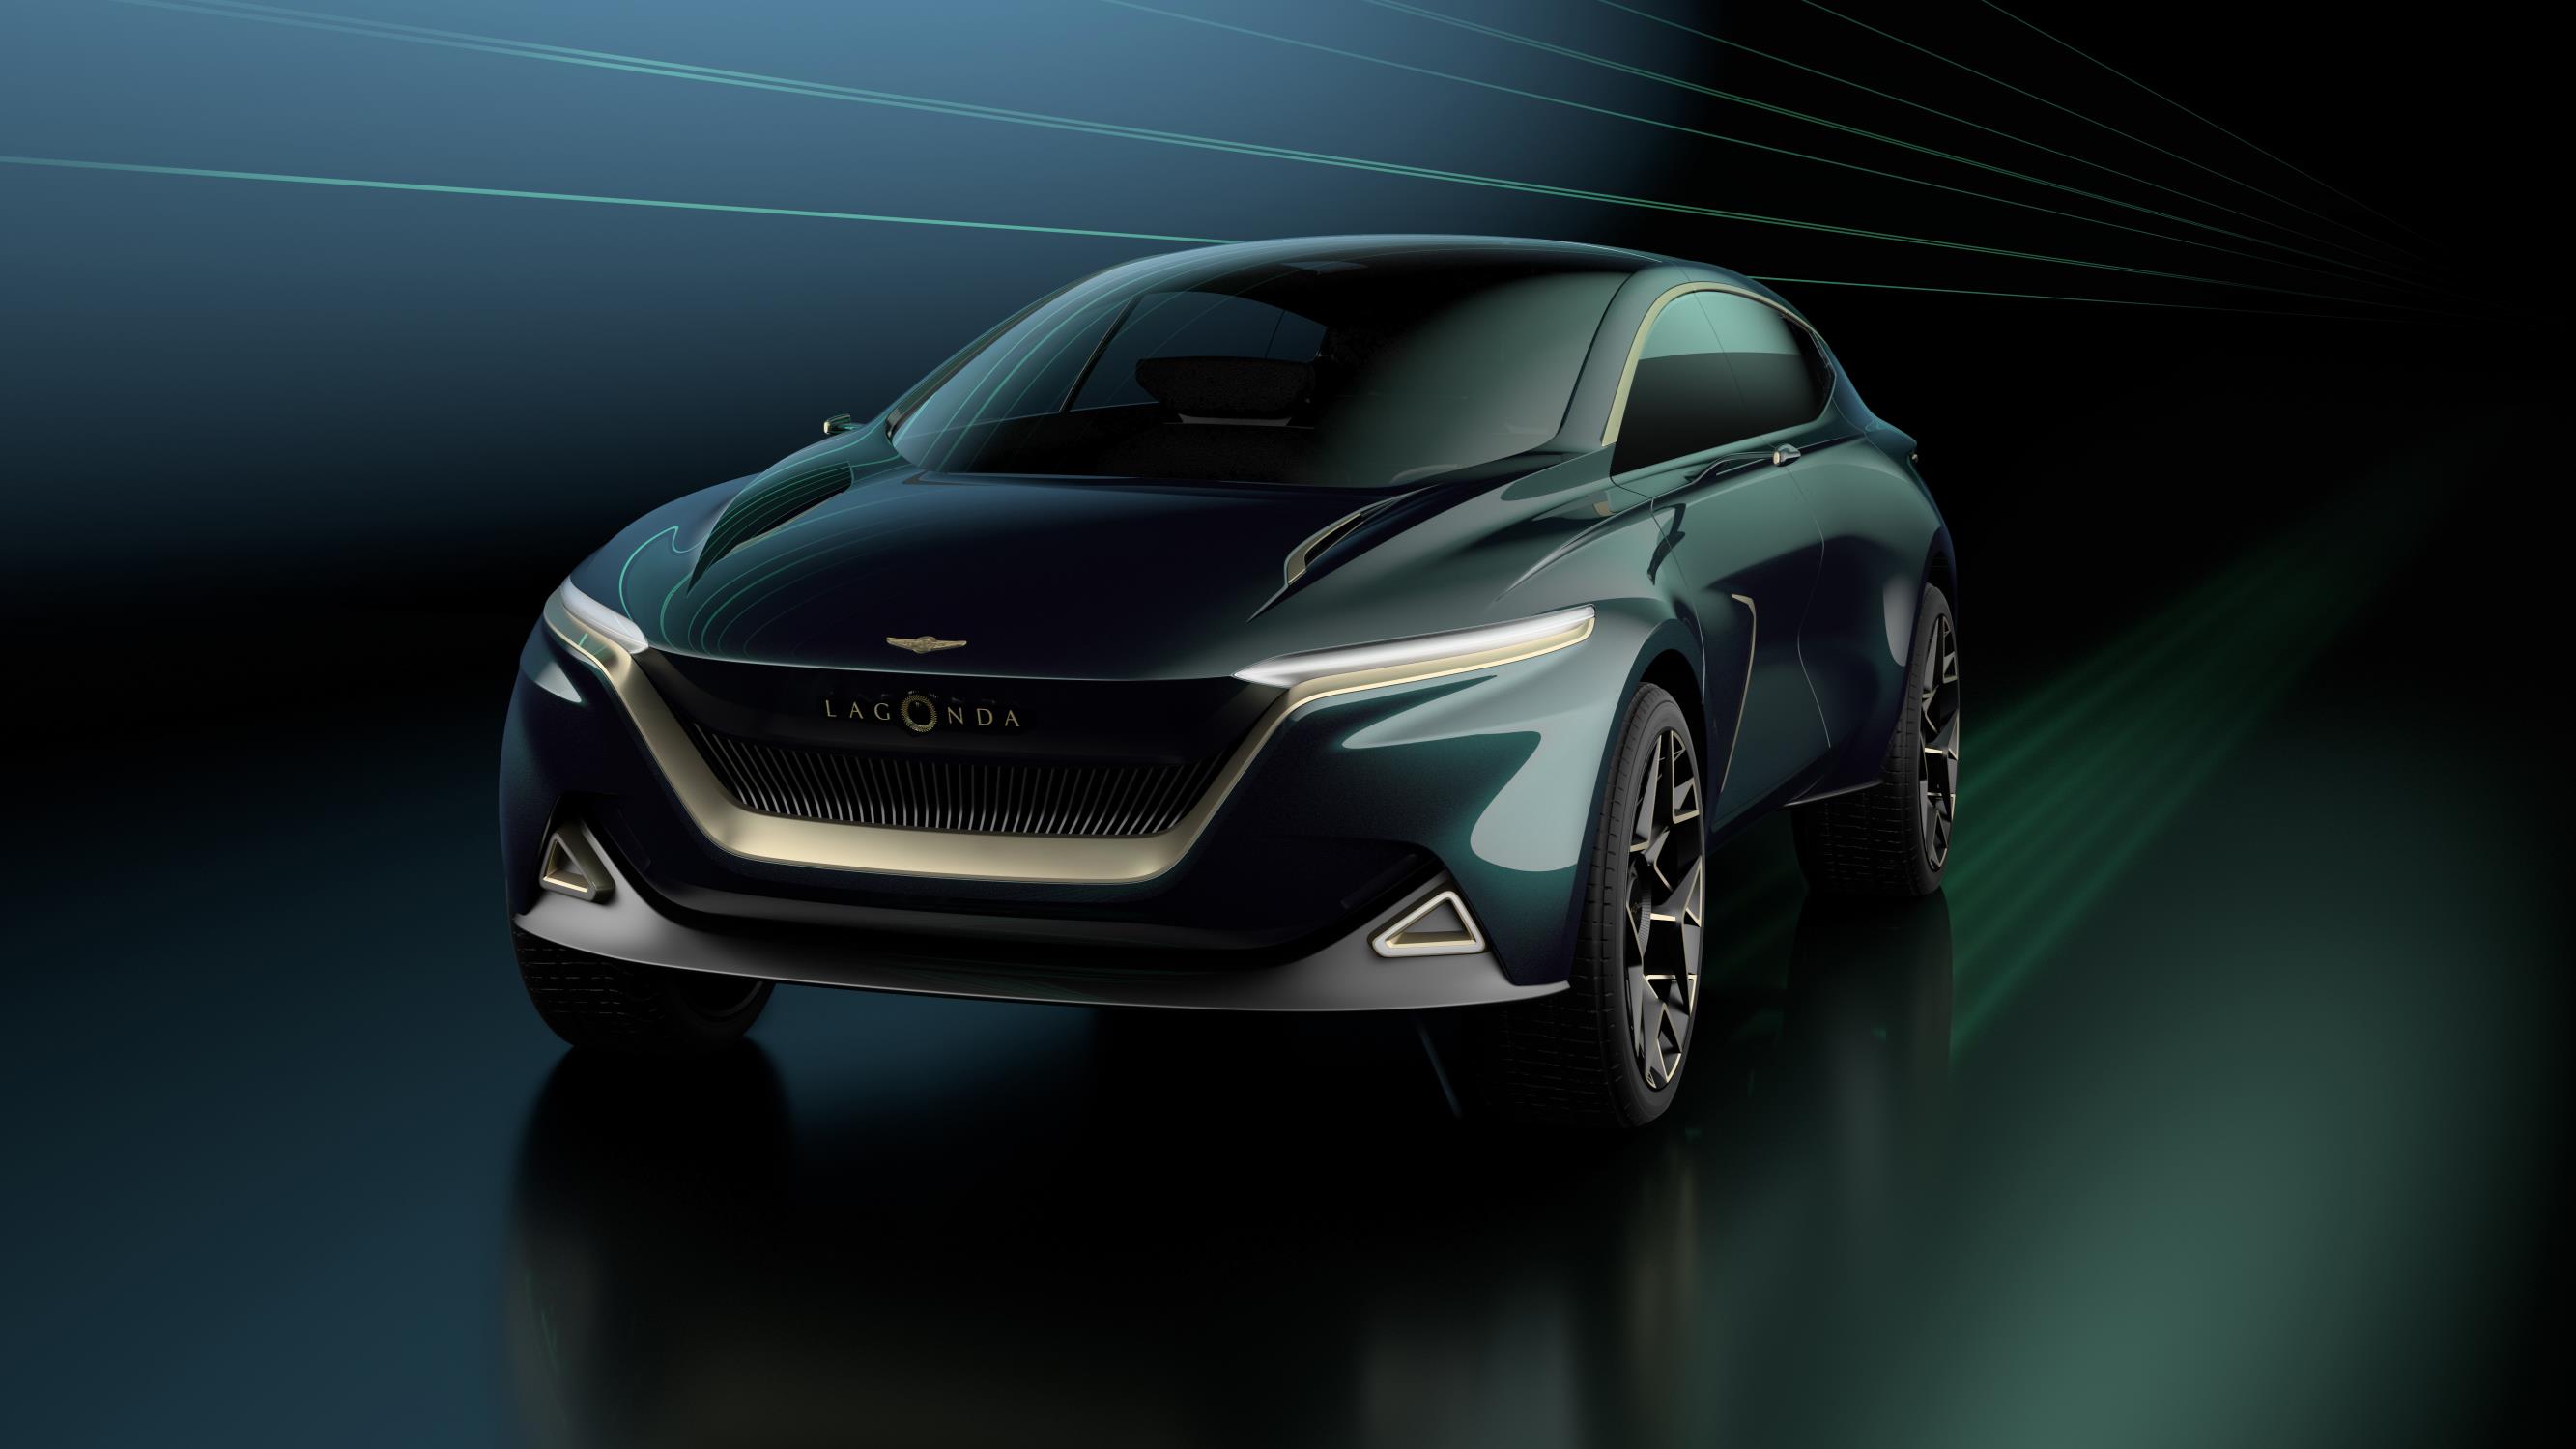 Рабочая версия внедорожника Lagonda будет производиться на новом заводе в Сент-Атане в Уэльсе с 2022 году. Lagonda использует систему, аналогичную Tesla Model X. Плоская аккумуляторная батарея «скейтборд» расположена близко к земле и выступает в каче